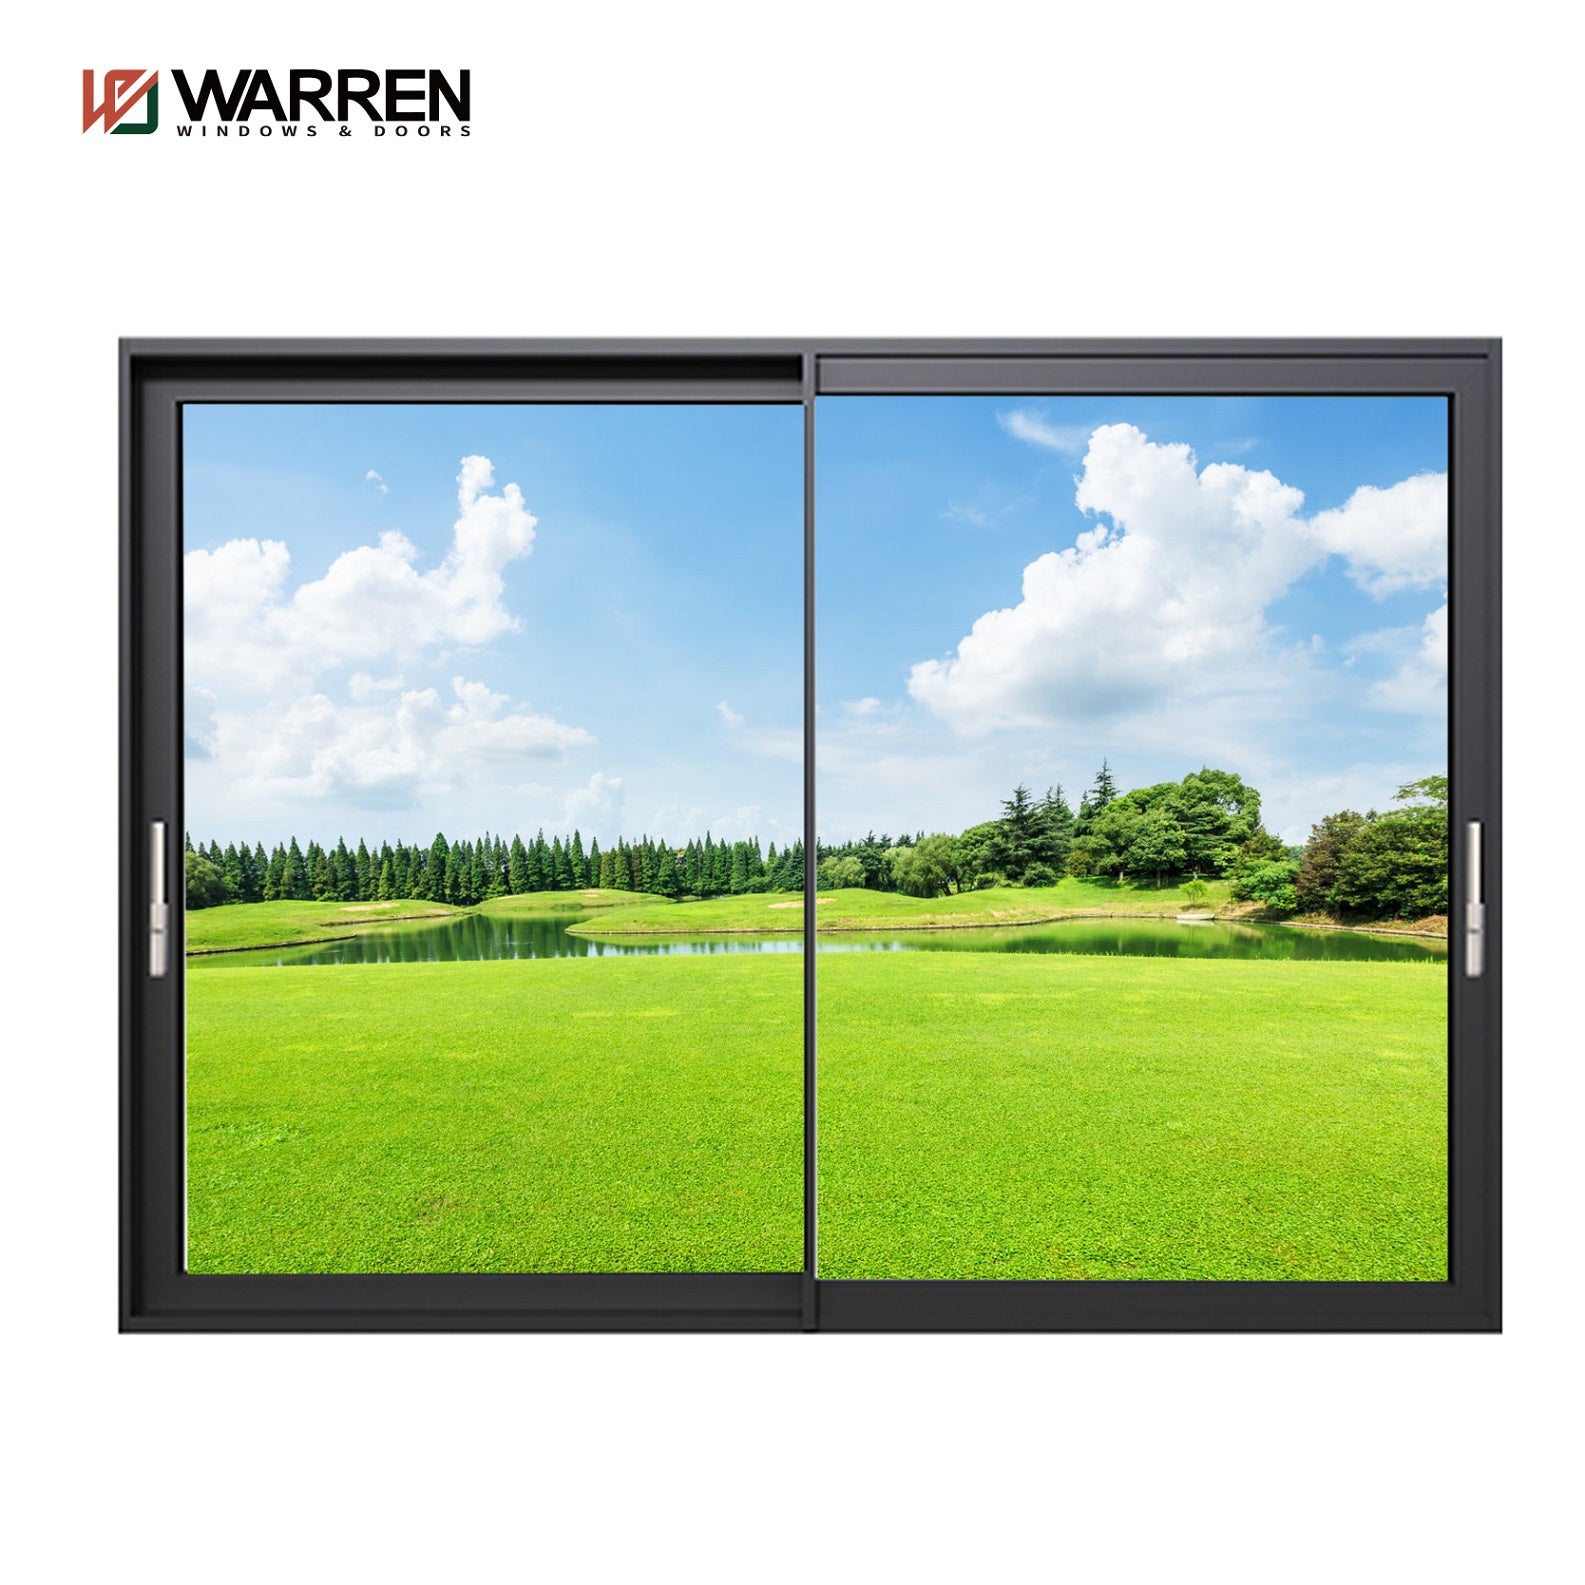 Warren Modern Villa lift Exterior Garden Partition Wall Large Double Glass Aluminum Sliding Door